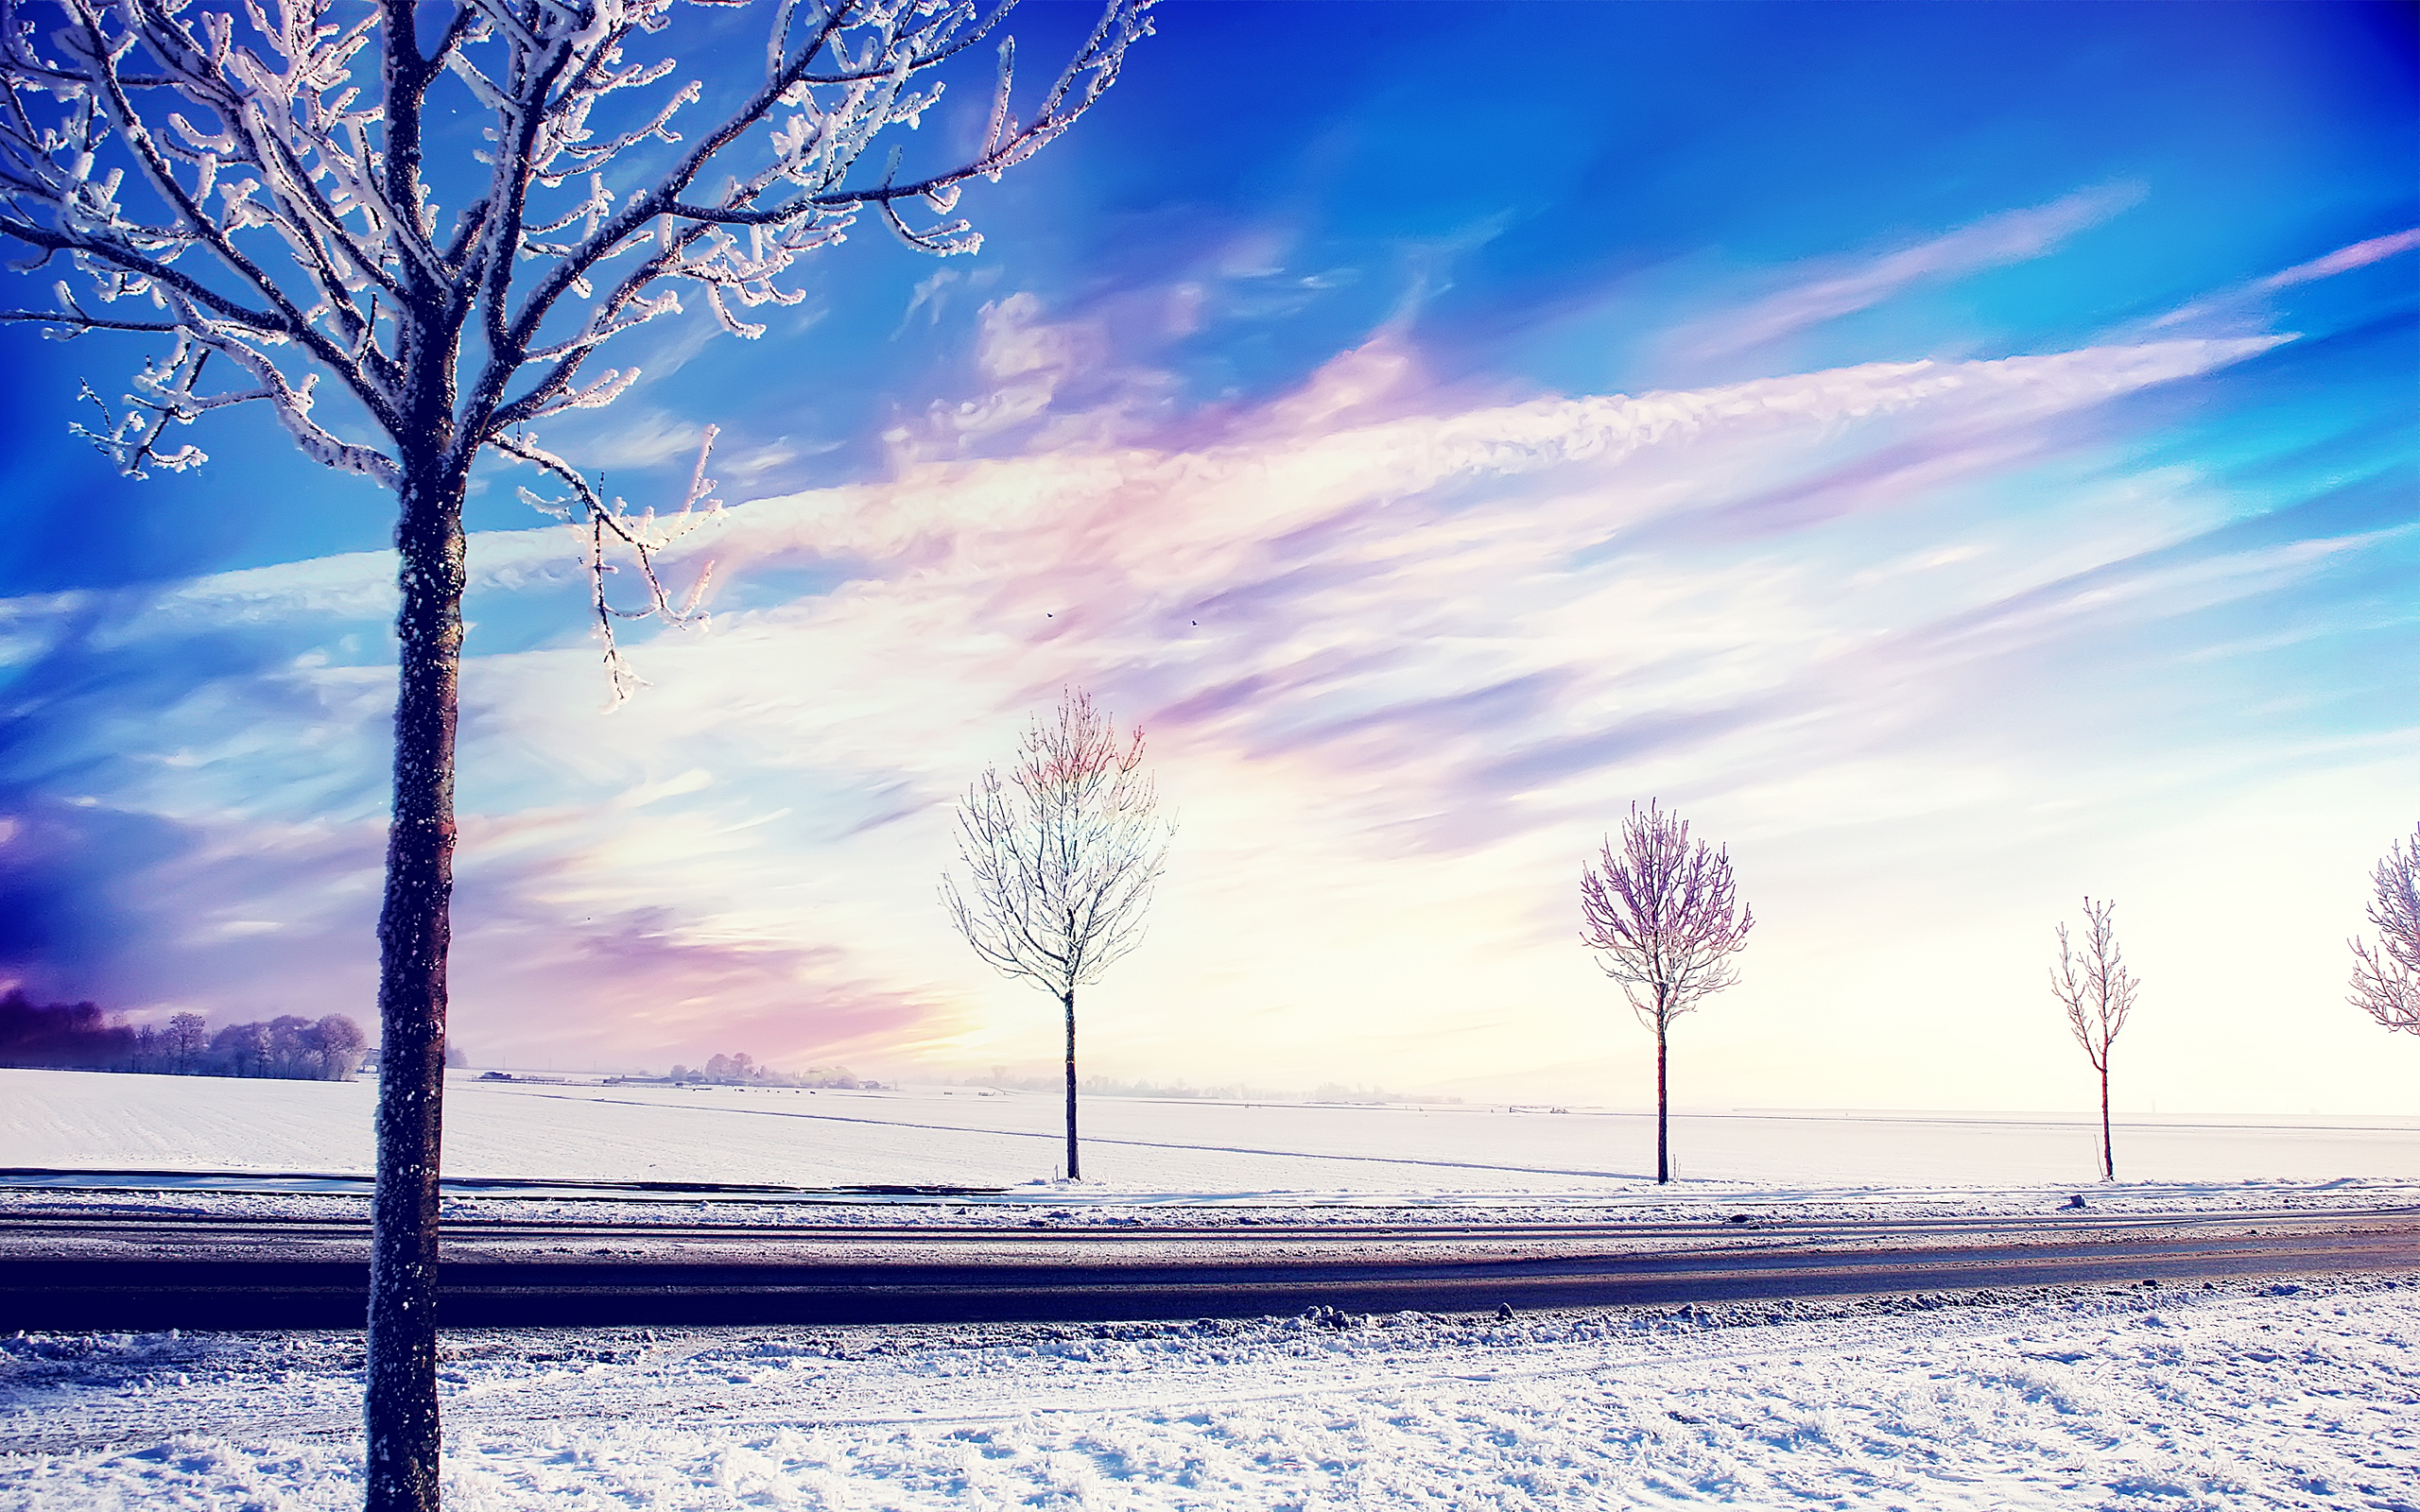 免费照片霜降时节的冬日风景